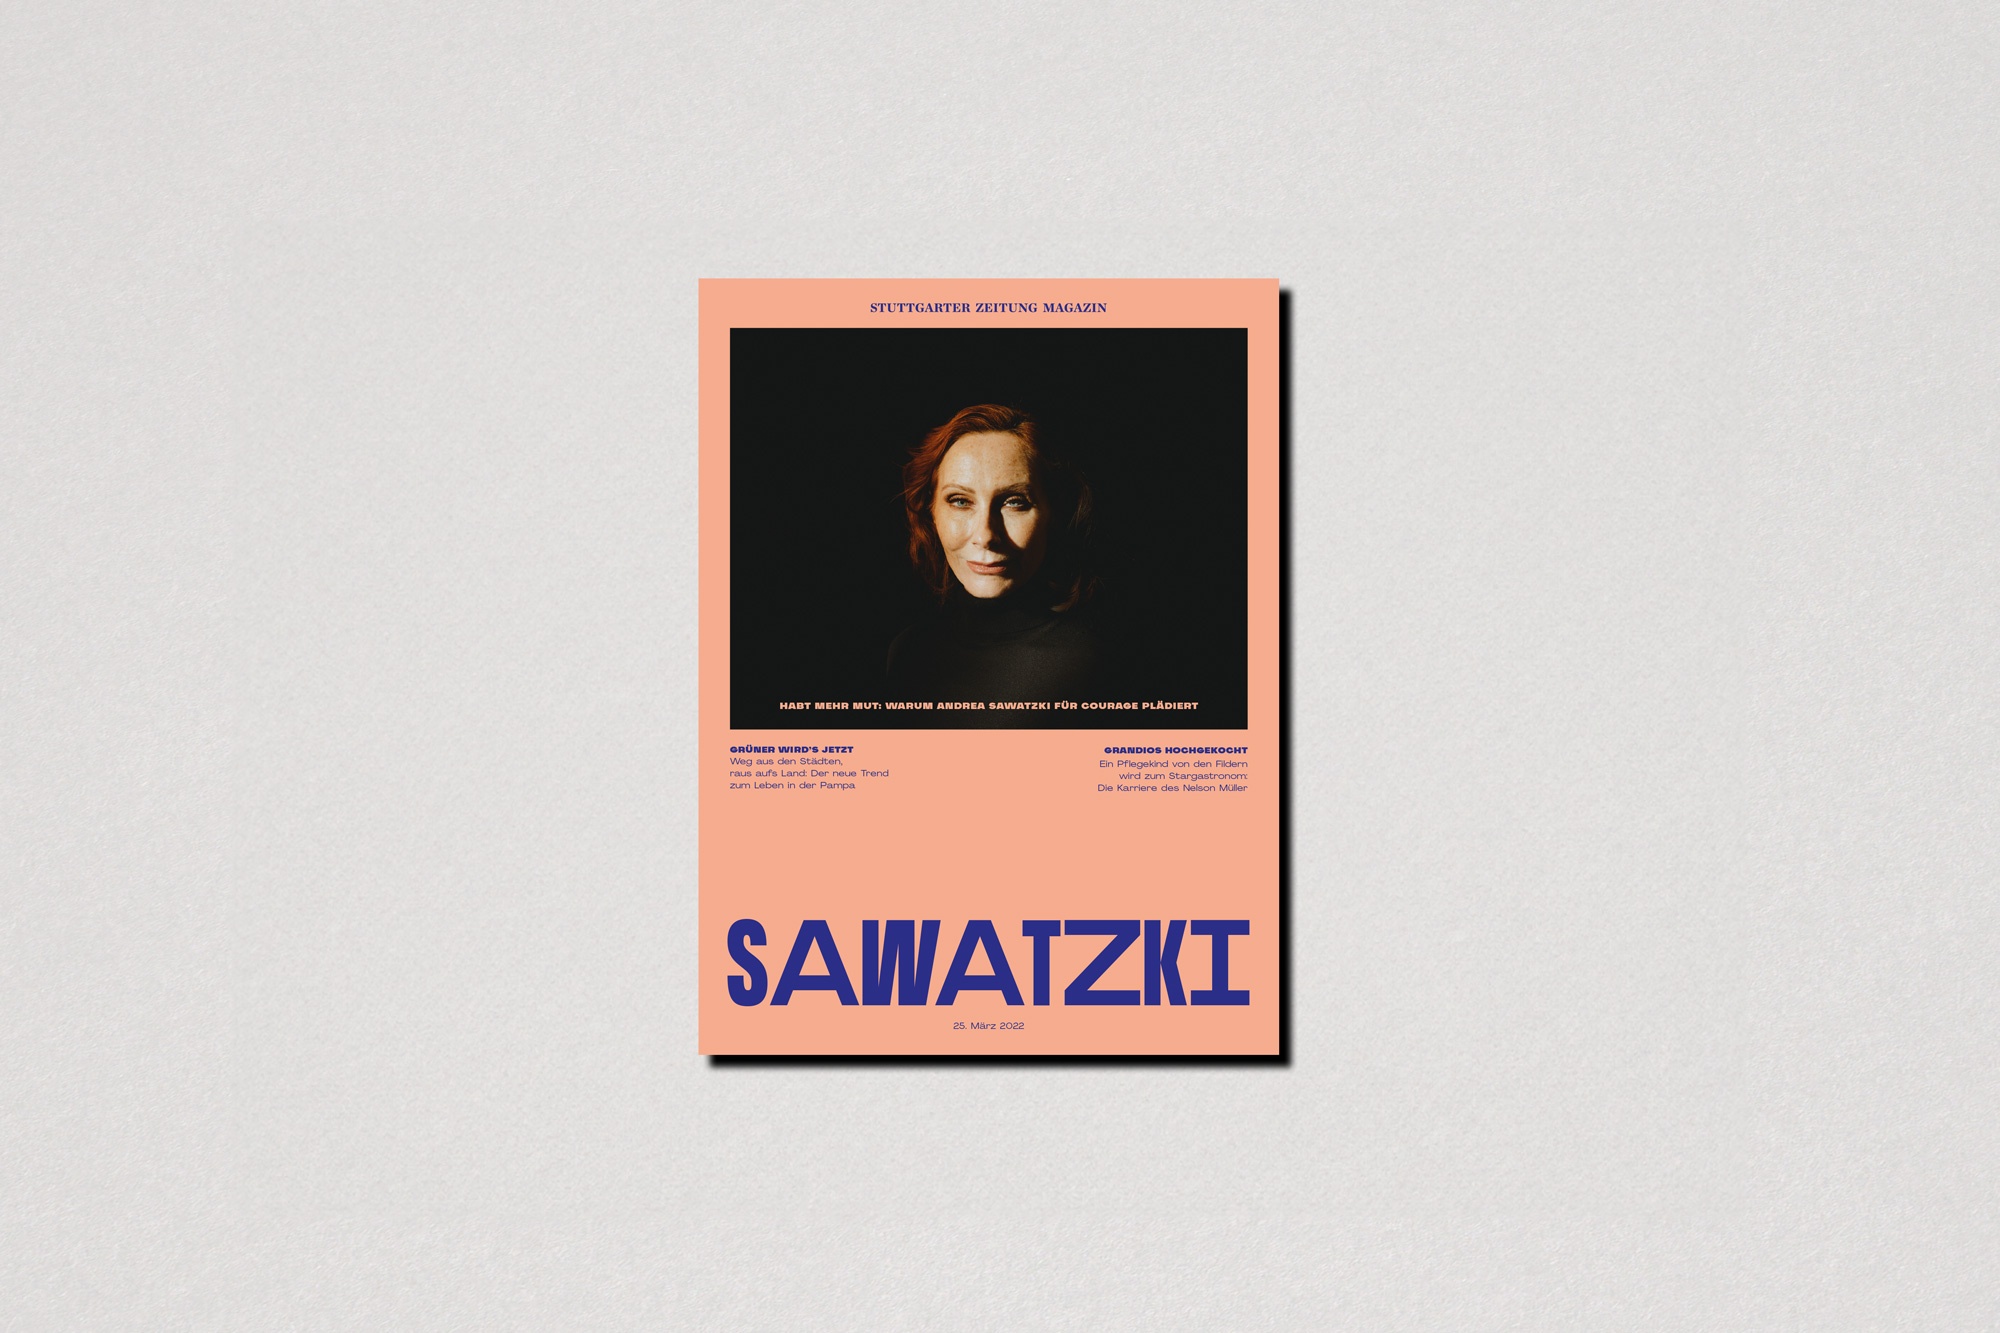 Stuttgarter Zeitung magazine Andrea Sawatzki cover photography by Jens Schmidt